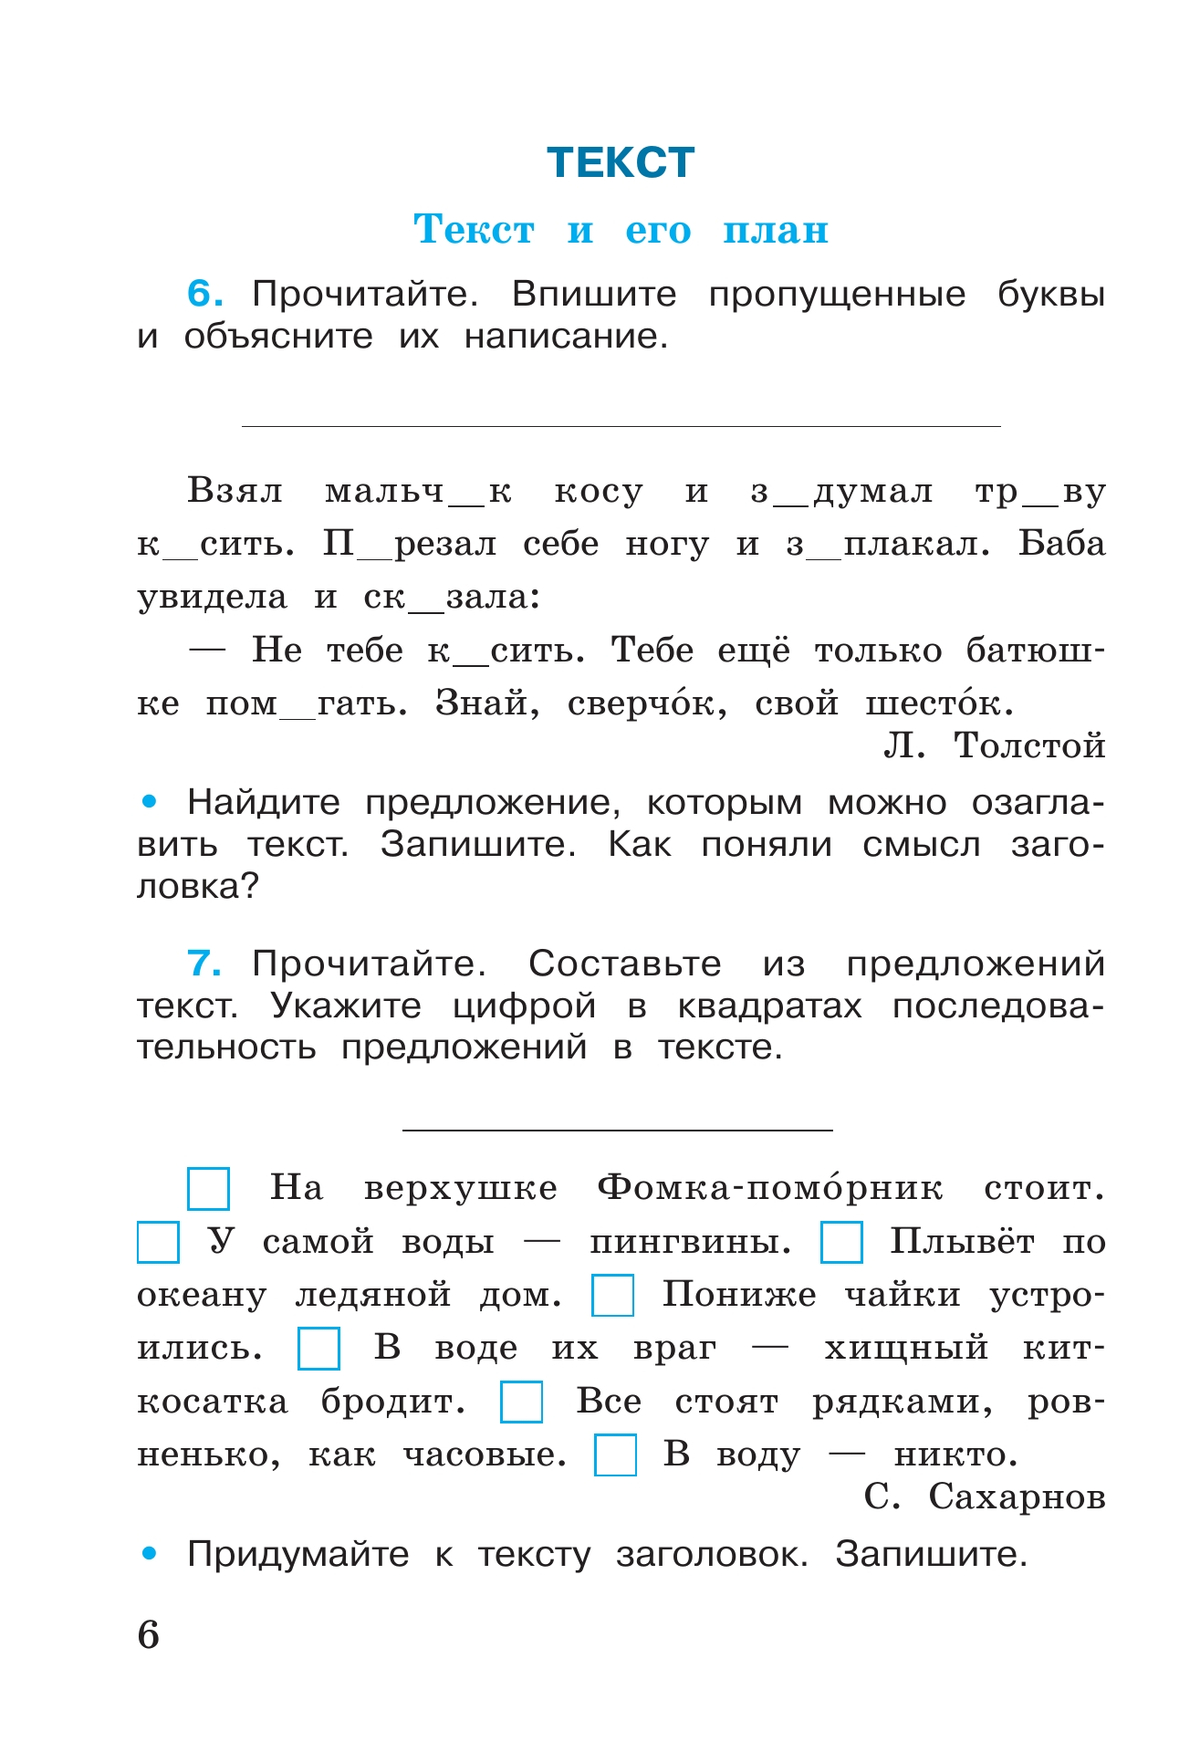 Русский язык. Рабочая тетрадь. 4 класс. В 2-х ч. Ч. 1 7